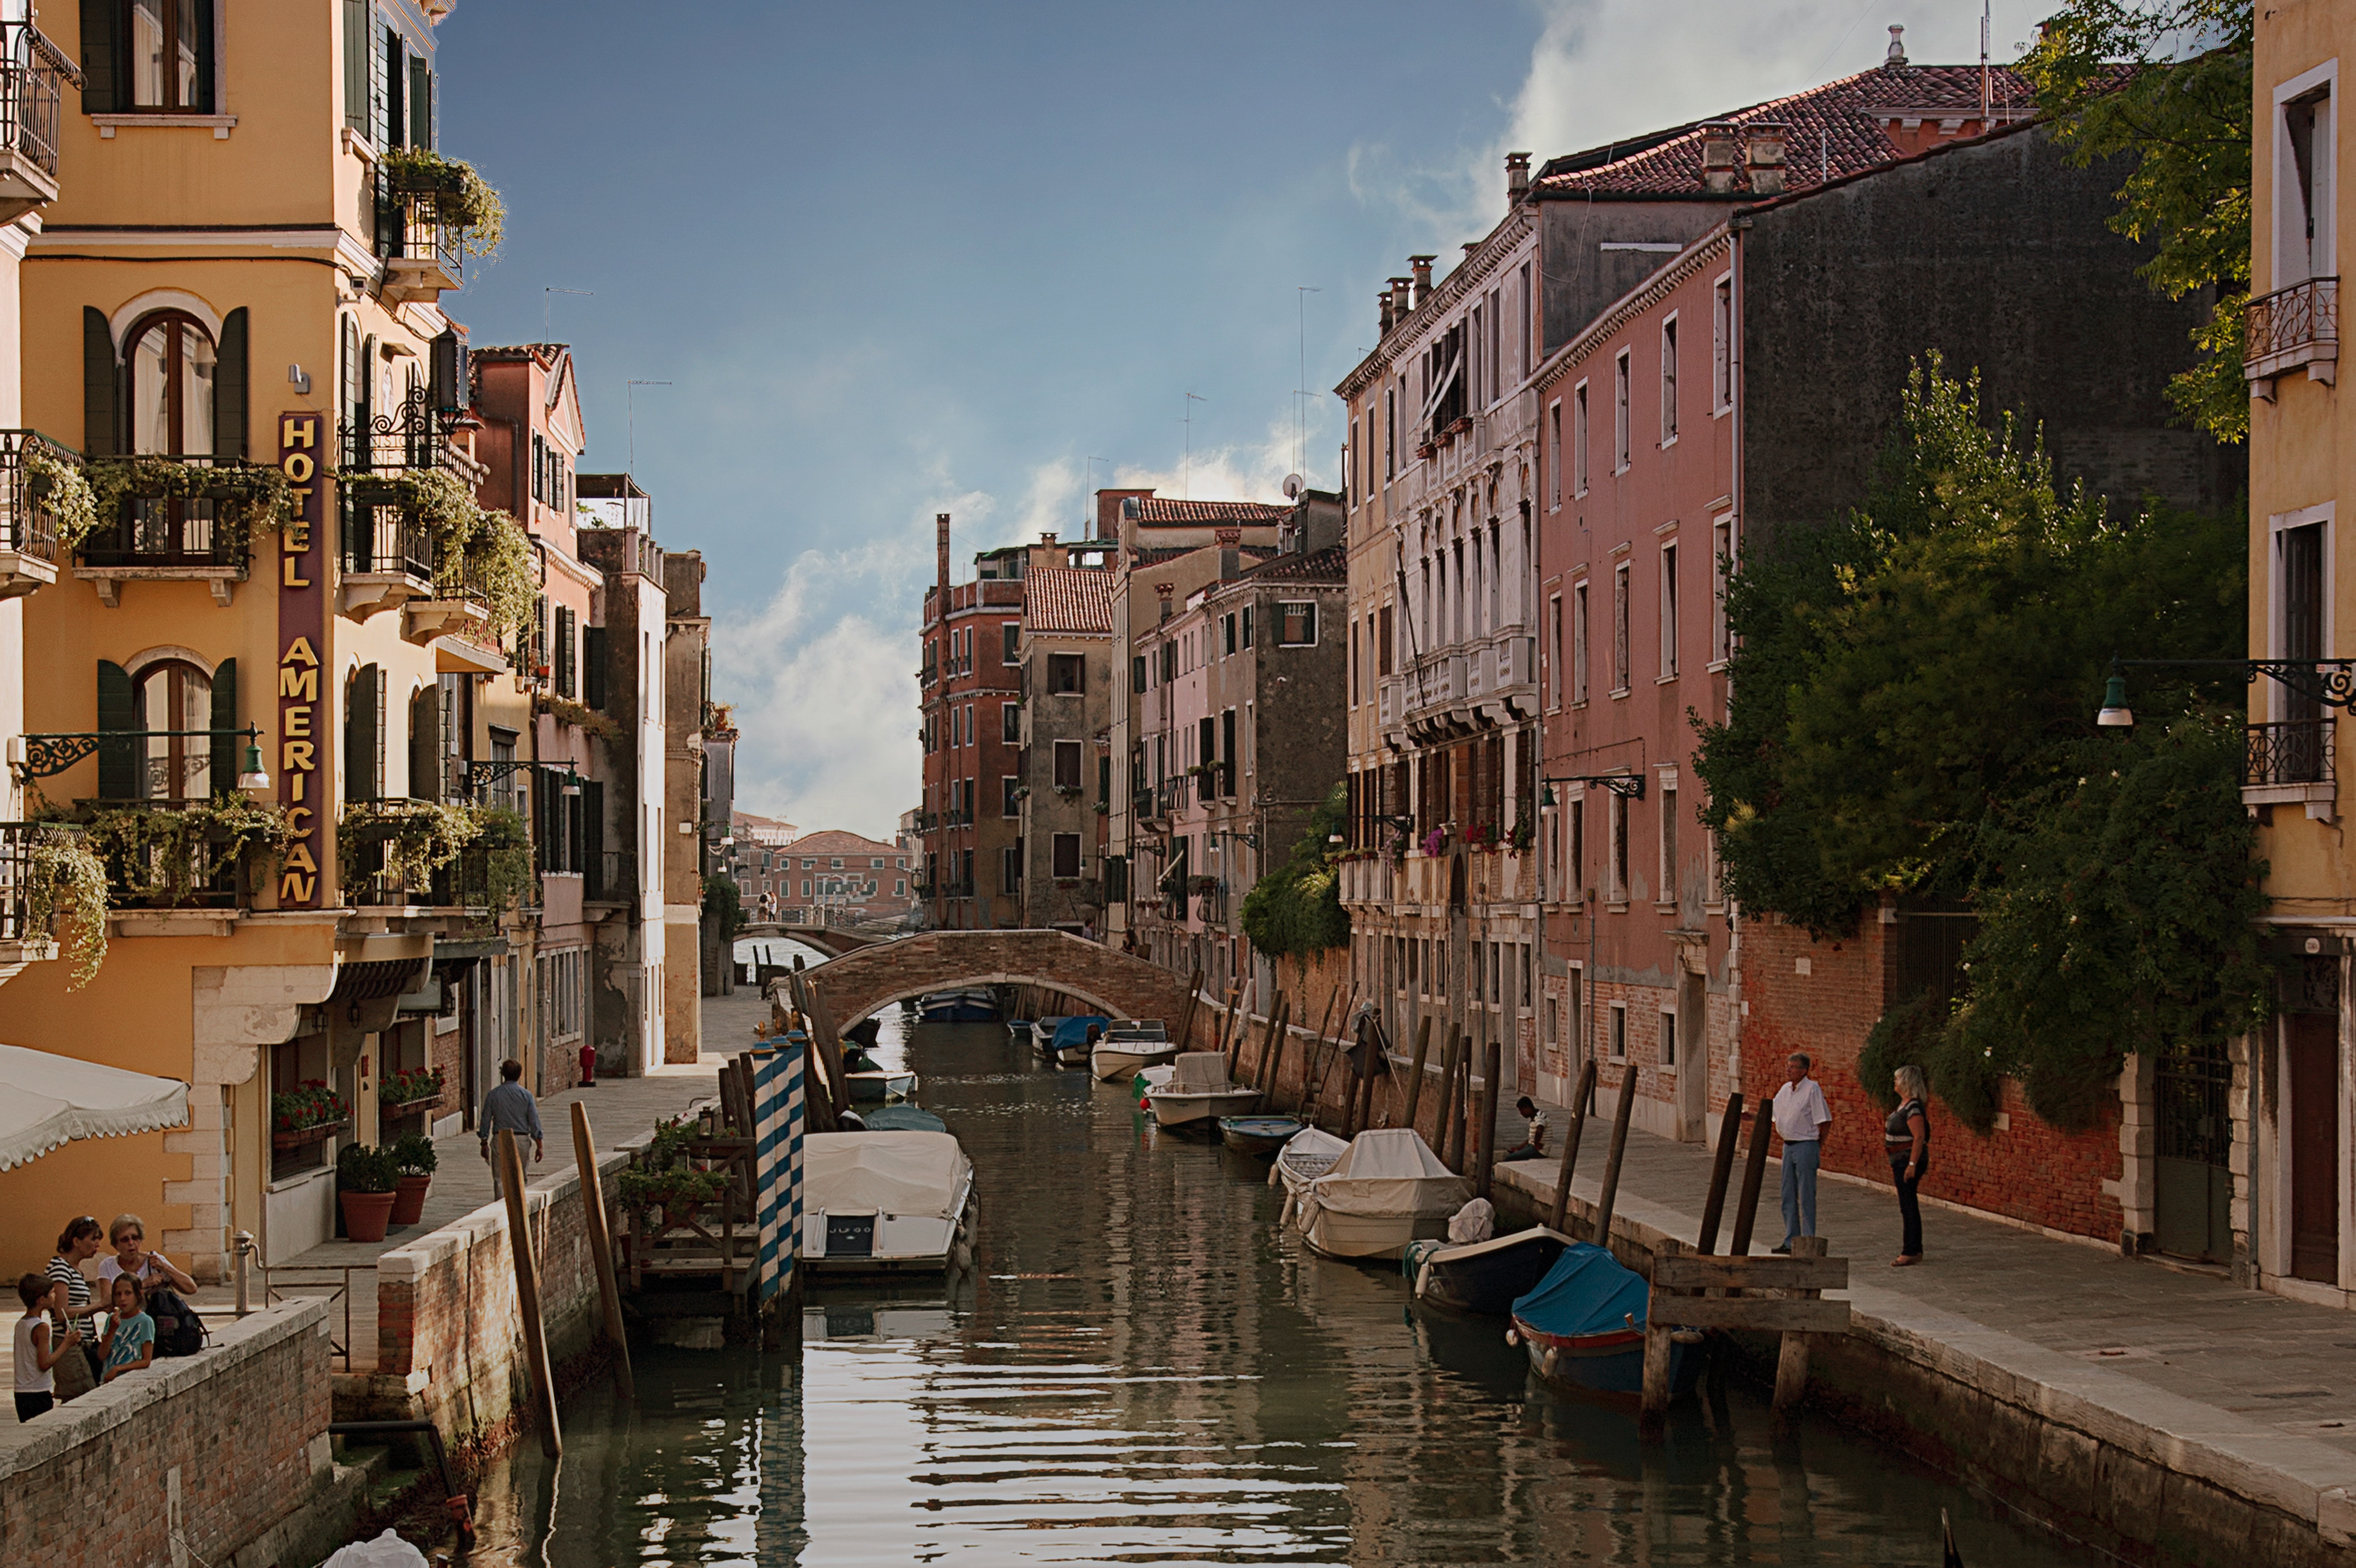 Street river. Река в городе. Прибрежные улочки. Улица с рекой. Венеция жилые районы.